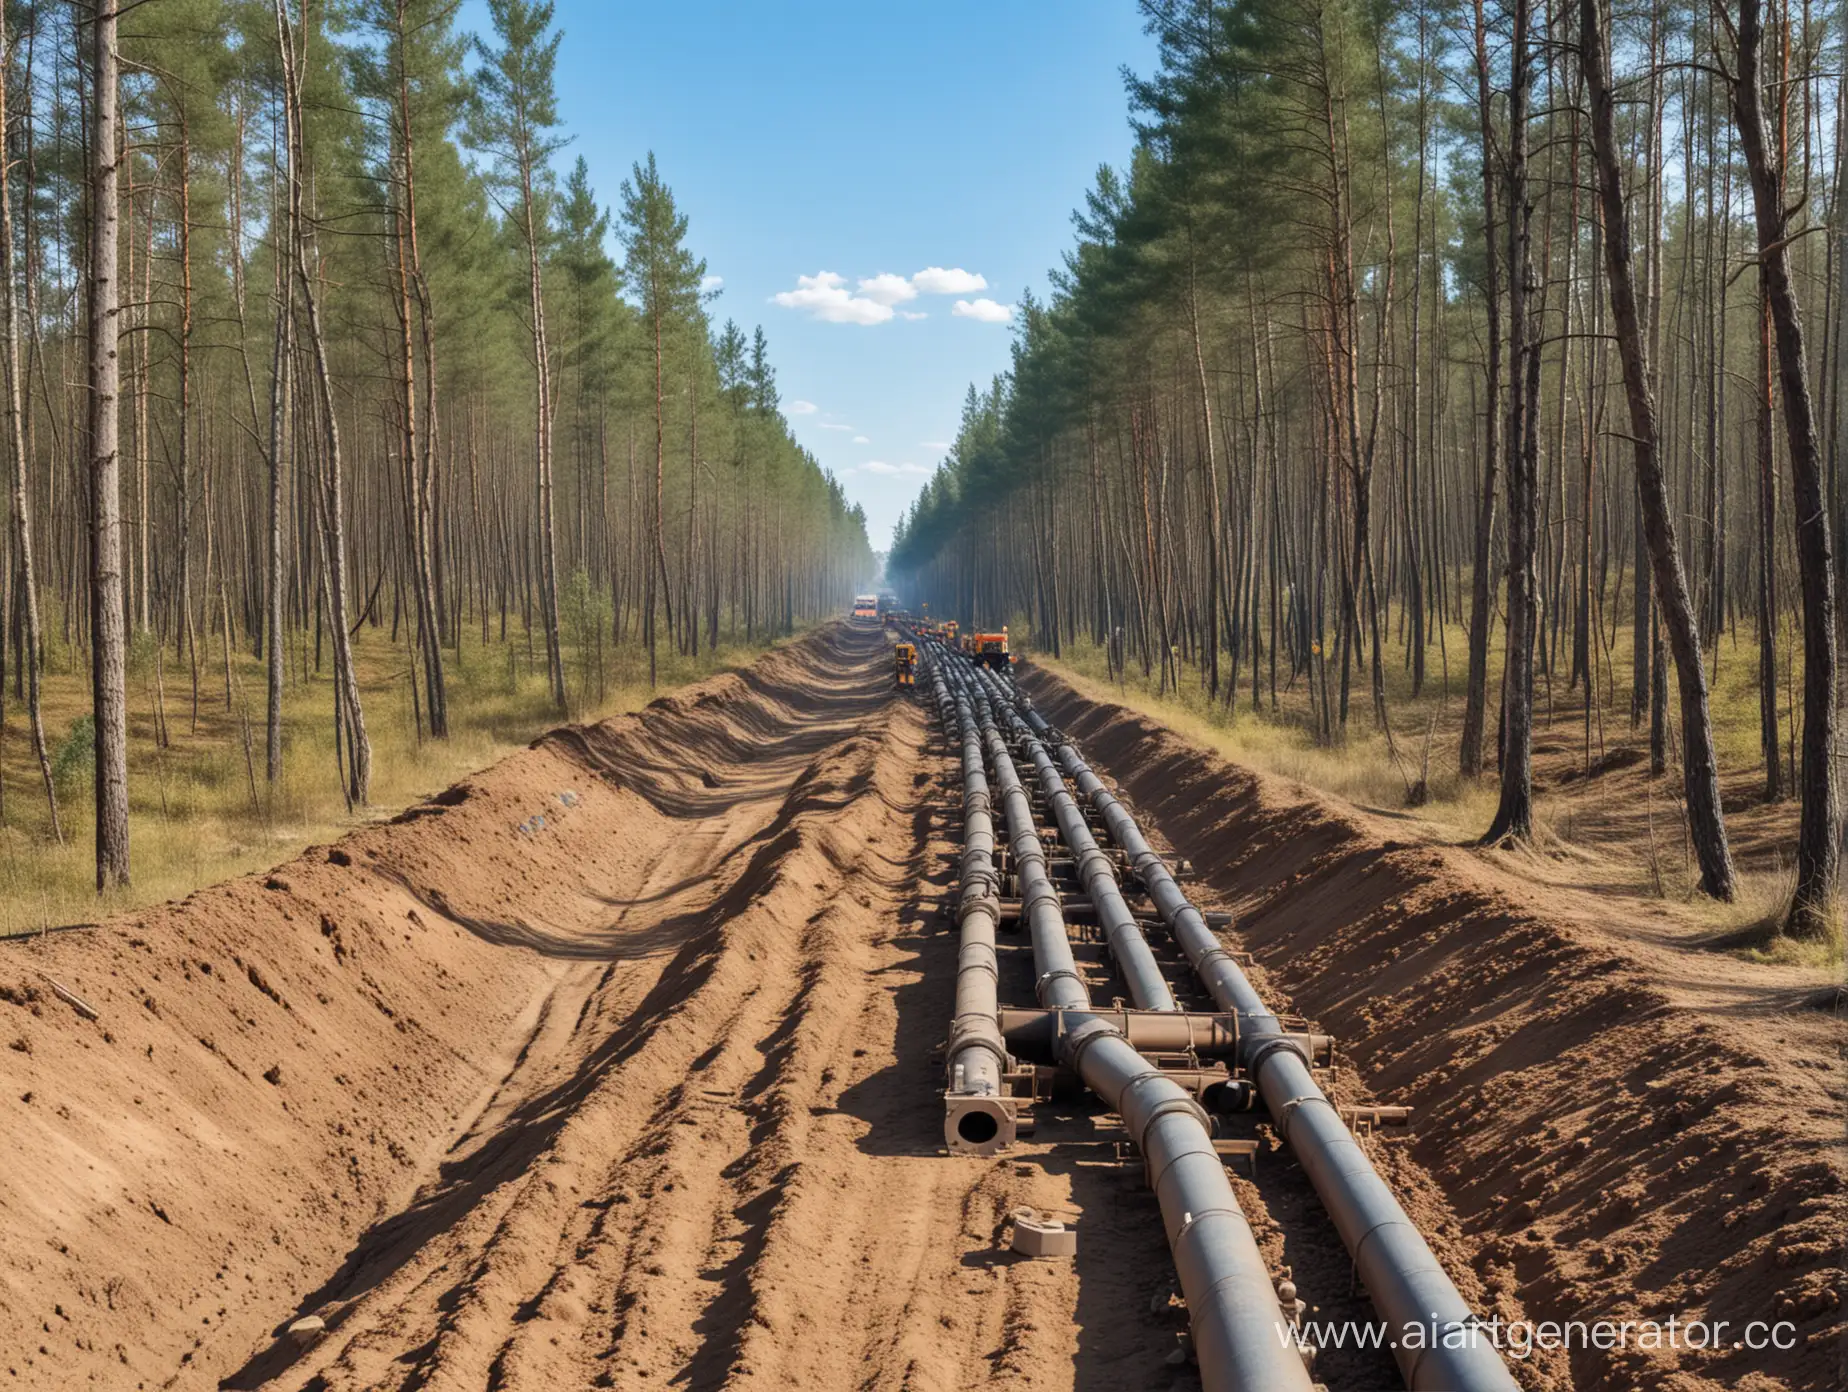 строительство газопровода при помощи техники в лесу в России в солнечную погоду с голубым небом